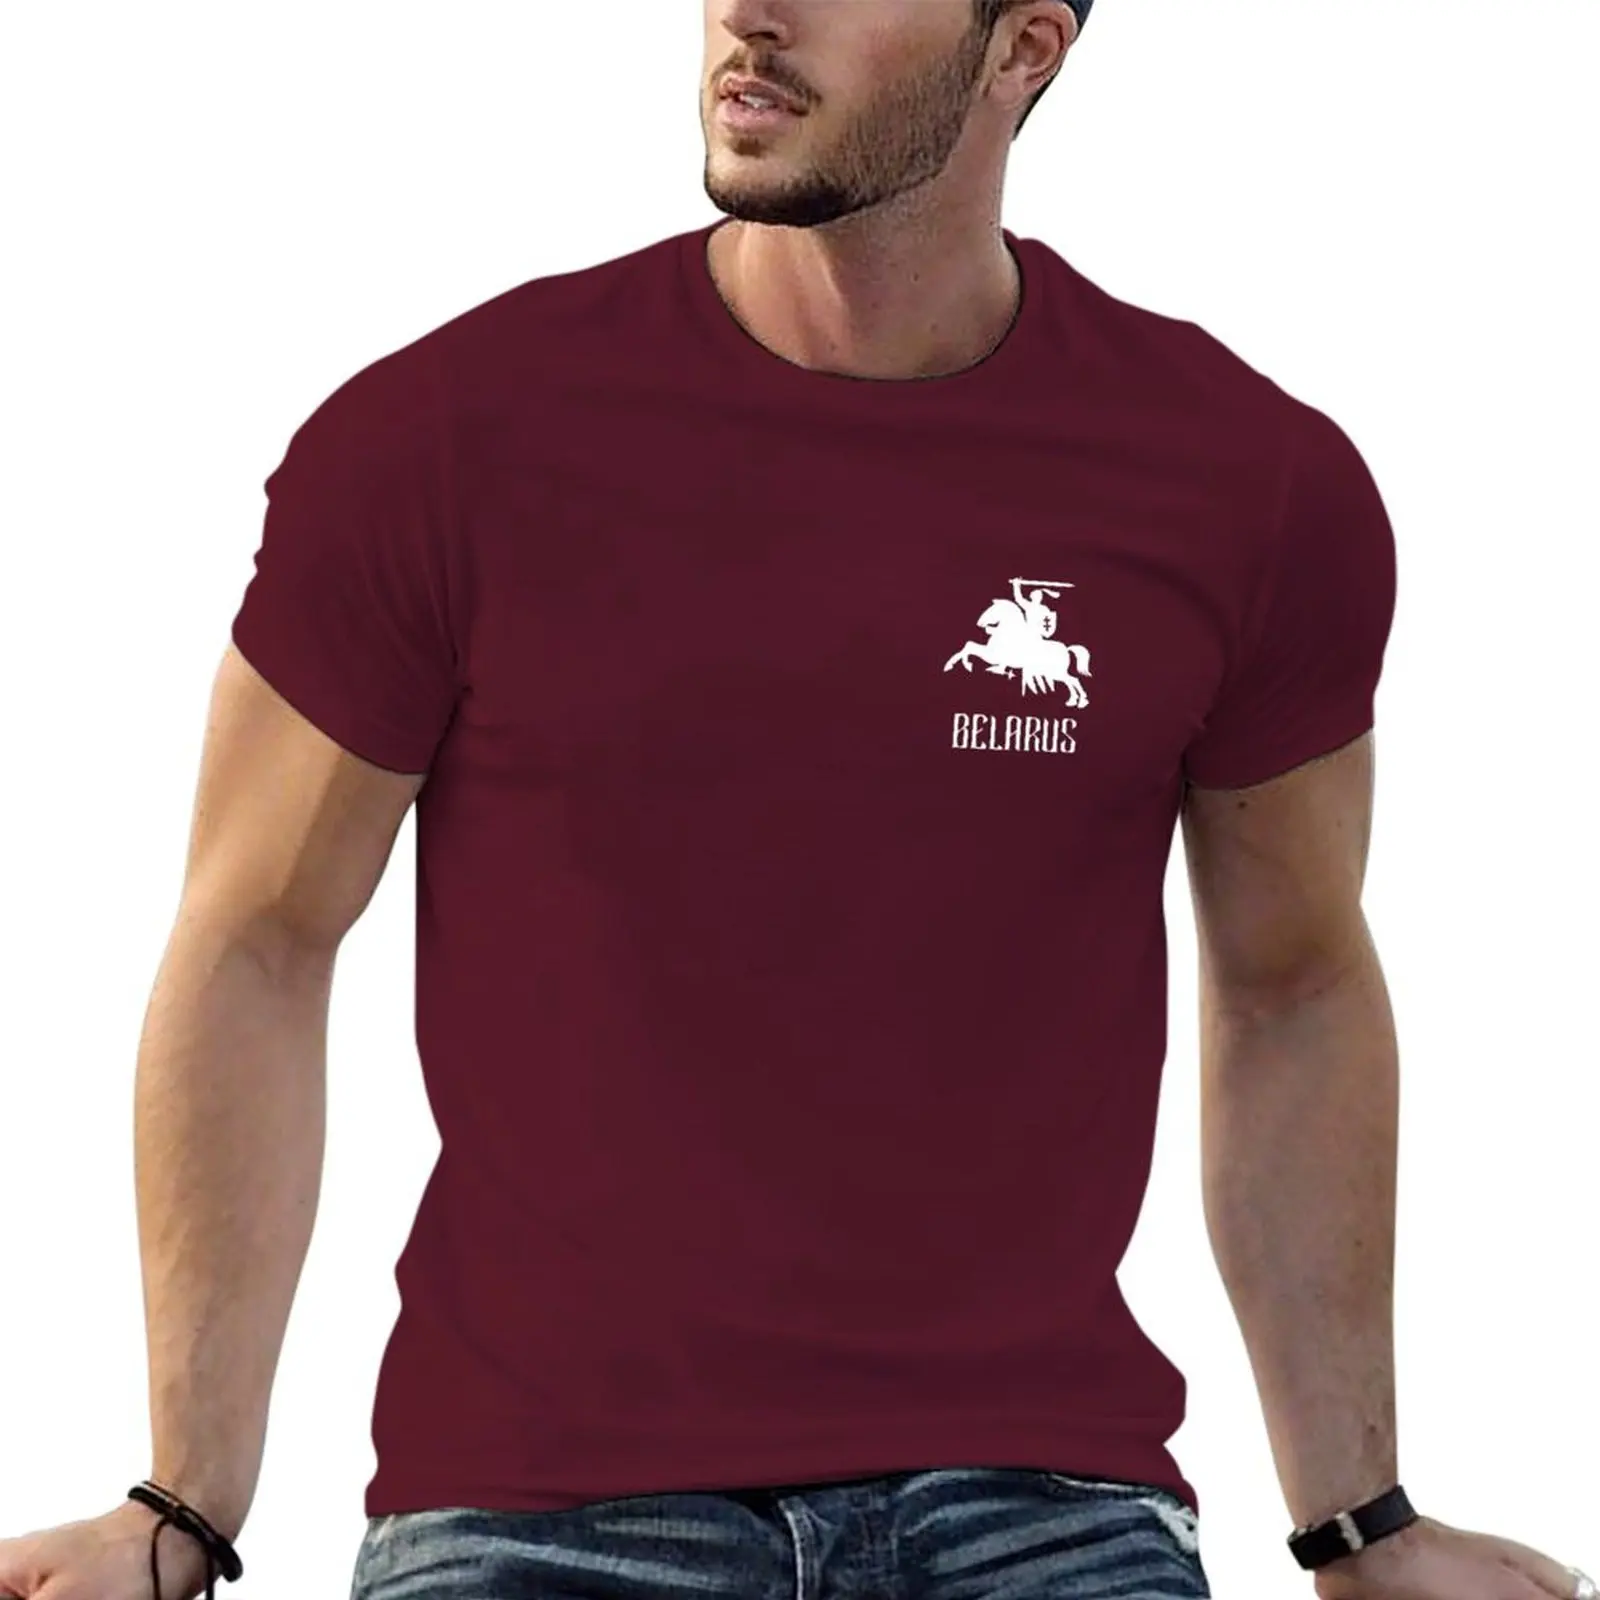 

Контурная Пагоня З ''п' BELARUS футболка из Беларуси кавайная одежда, футболка большого размера для мужчин